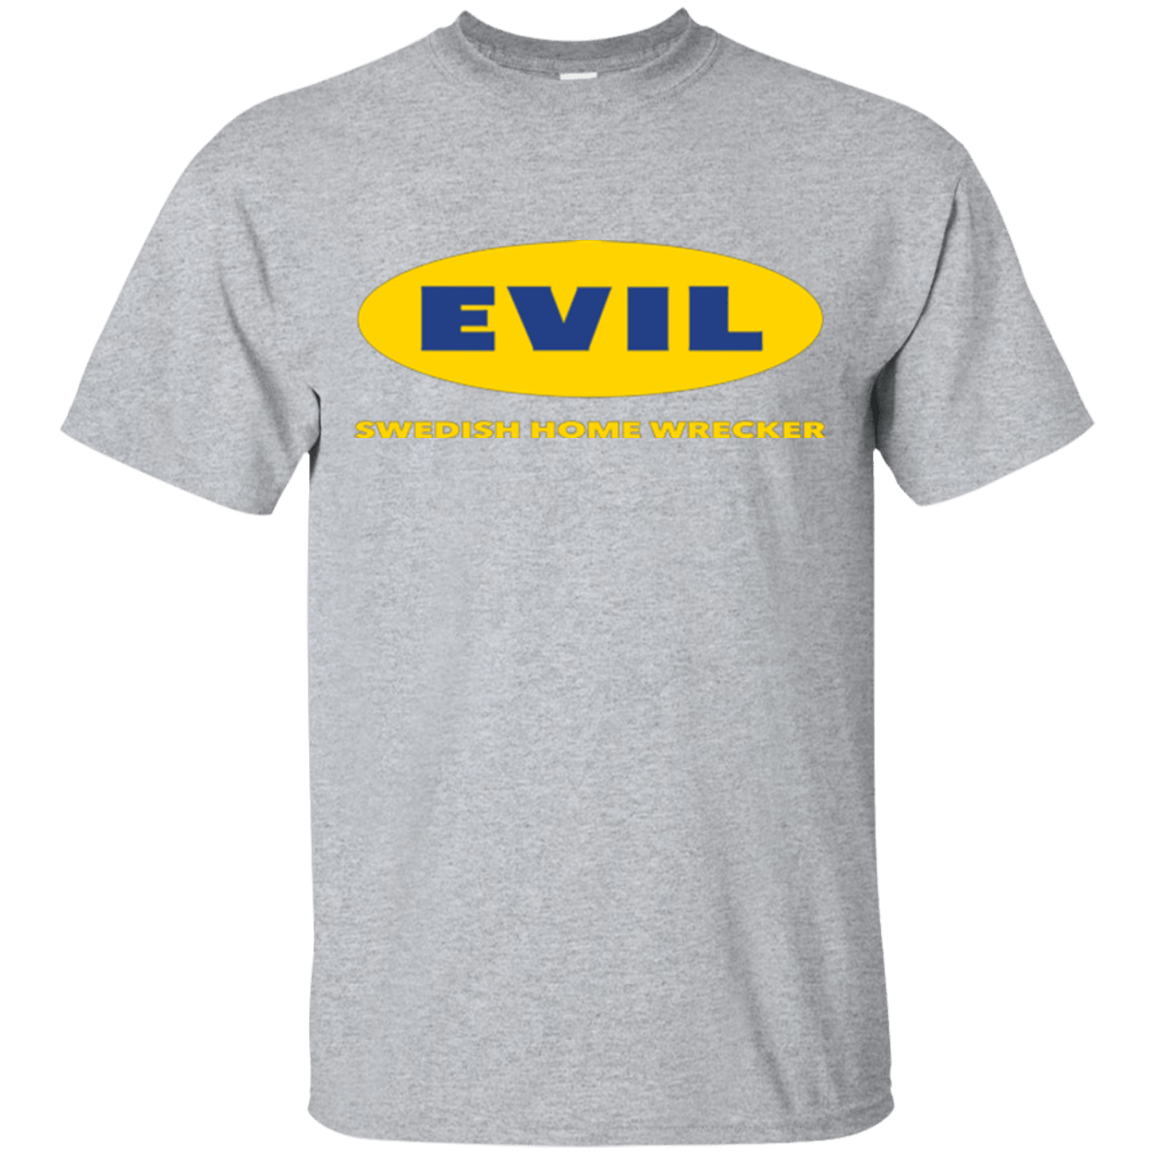 T-Shirts Sport Grey / Small EVIL Home Wrecker T-Shirt